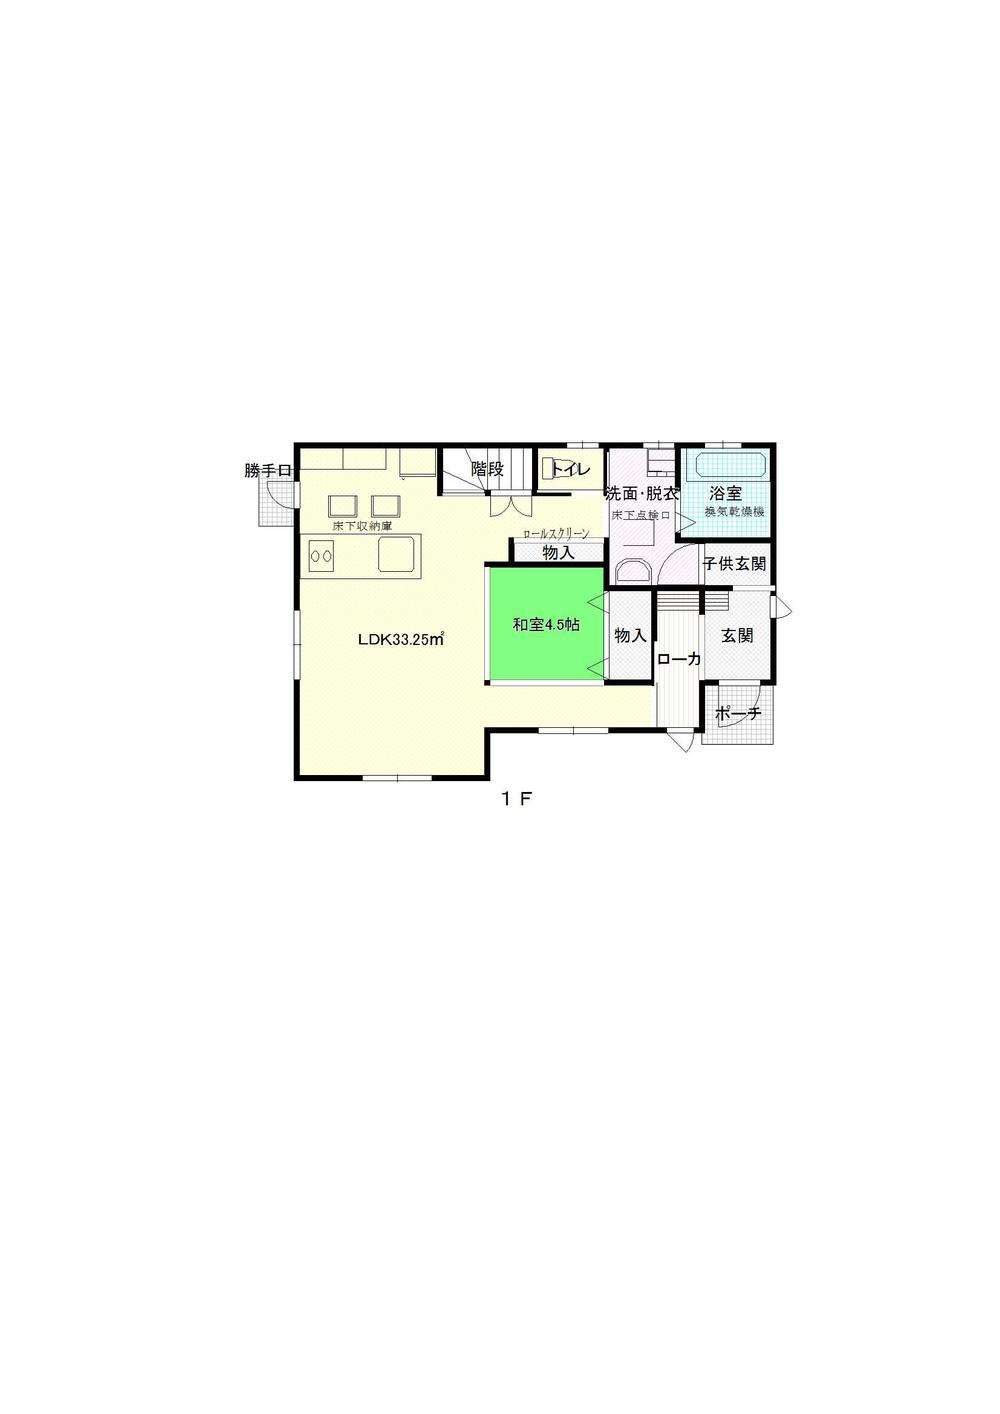 Floor plan. 24,900,000 yen, 5LDK, Land area 198.35 sq m , Building area 126.5 sq m 1F Floor